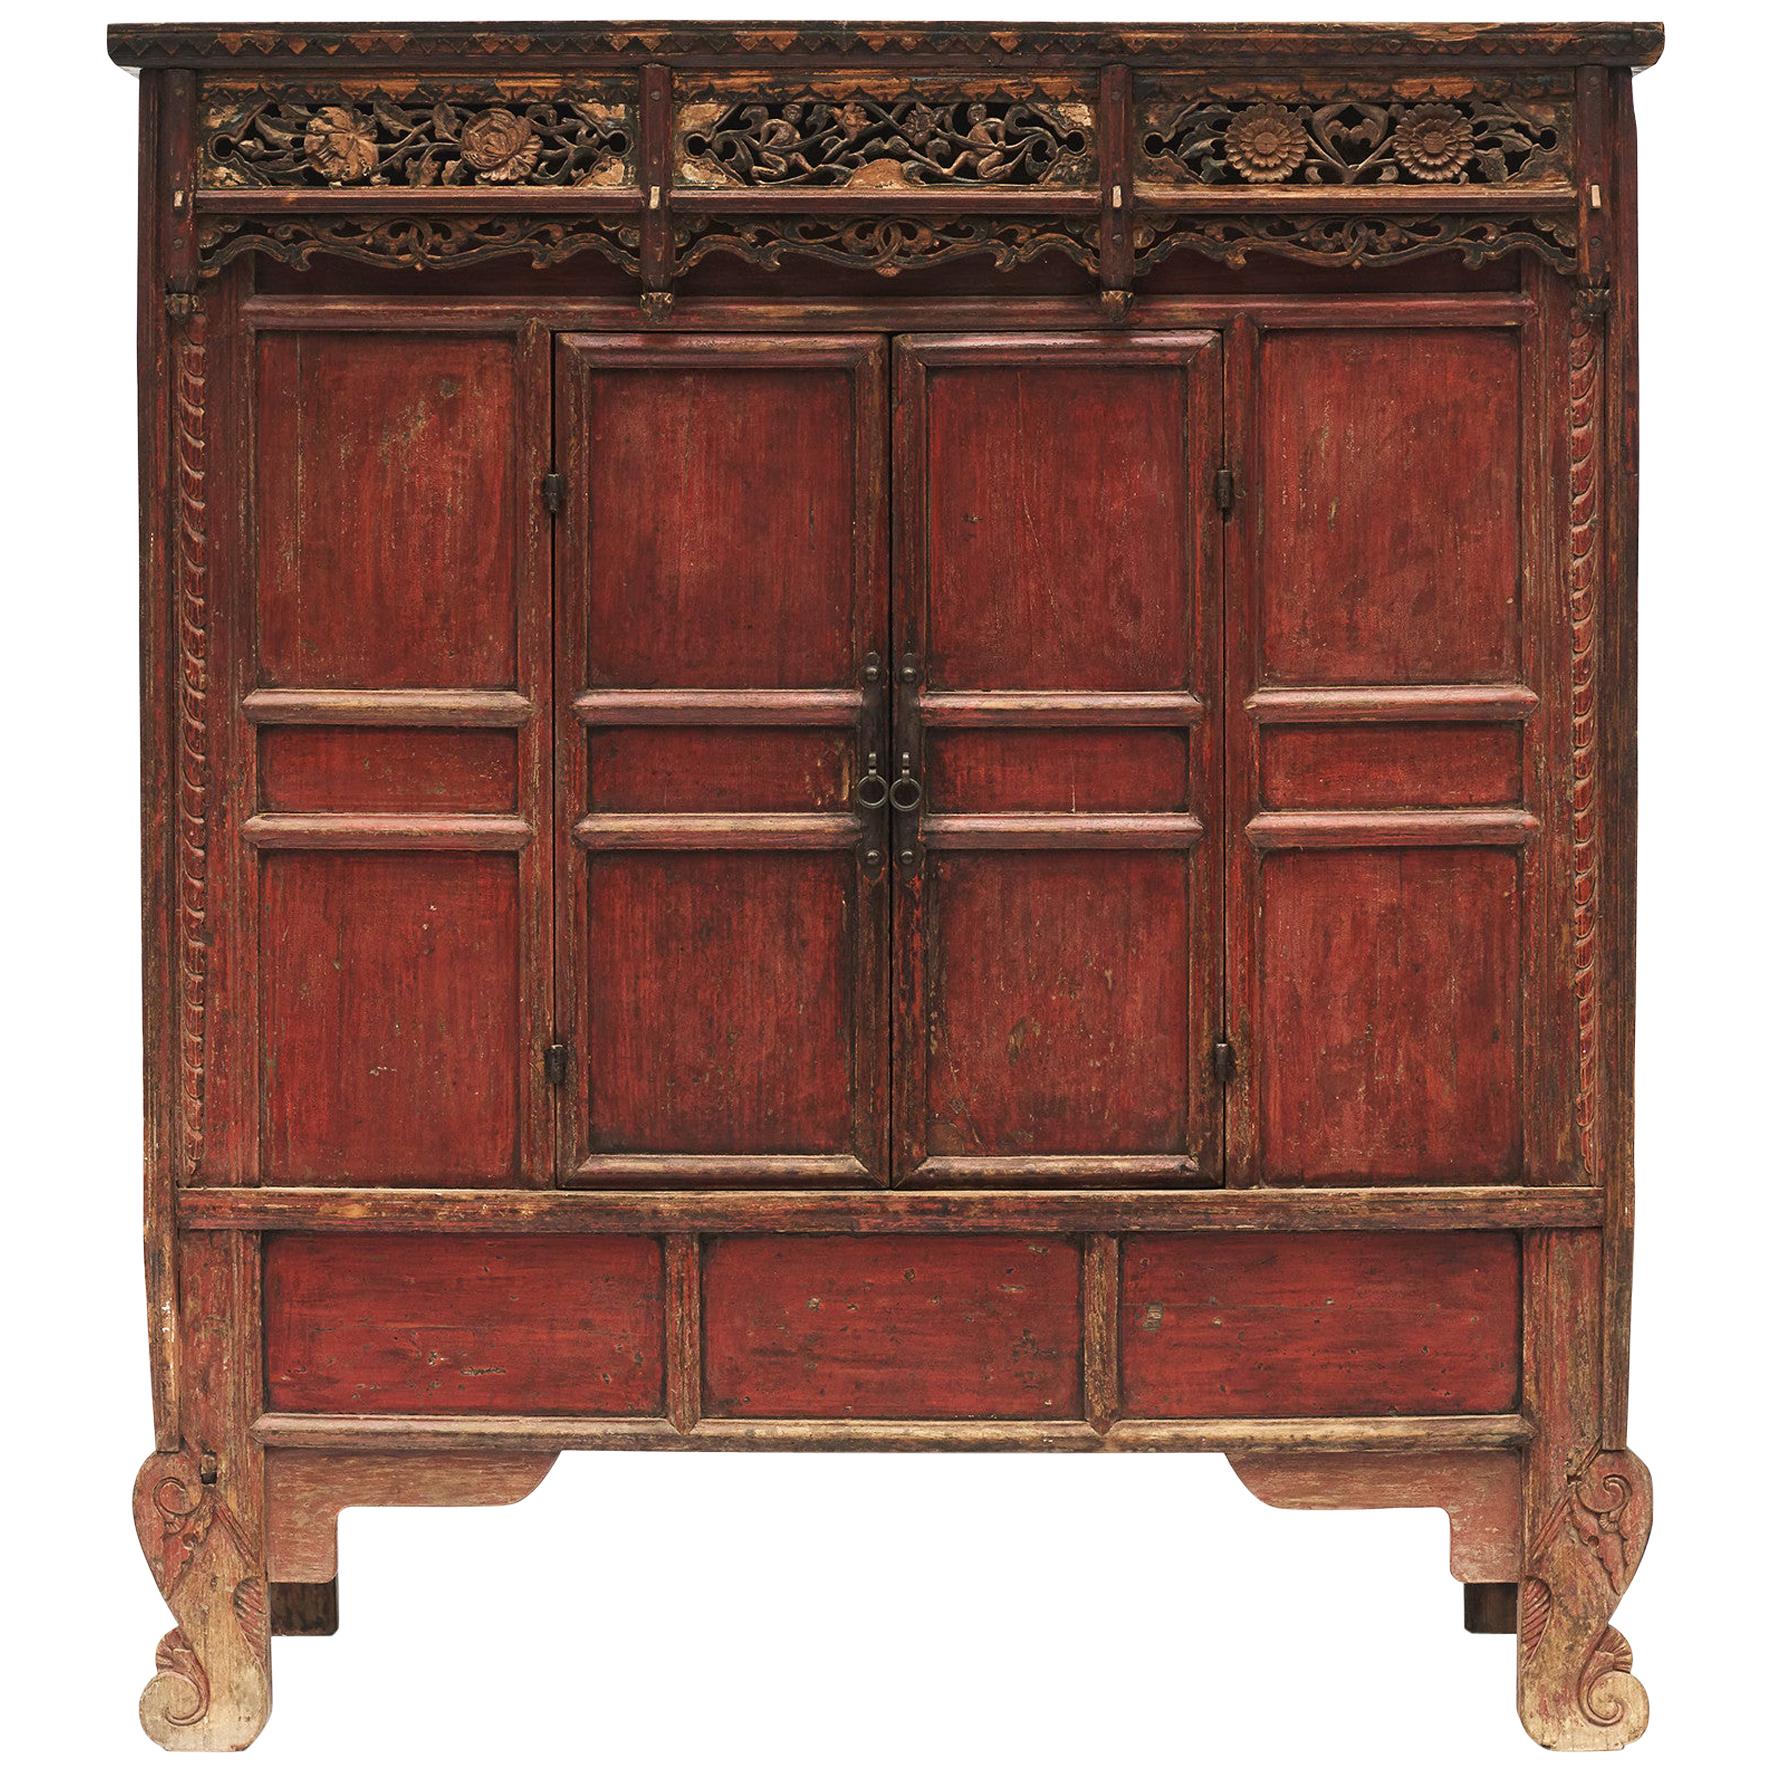 Cabinet de la dynastie Ming du XVe au XVIe siècle. Laque rouge